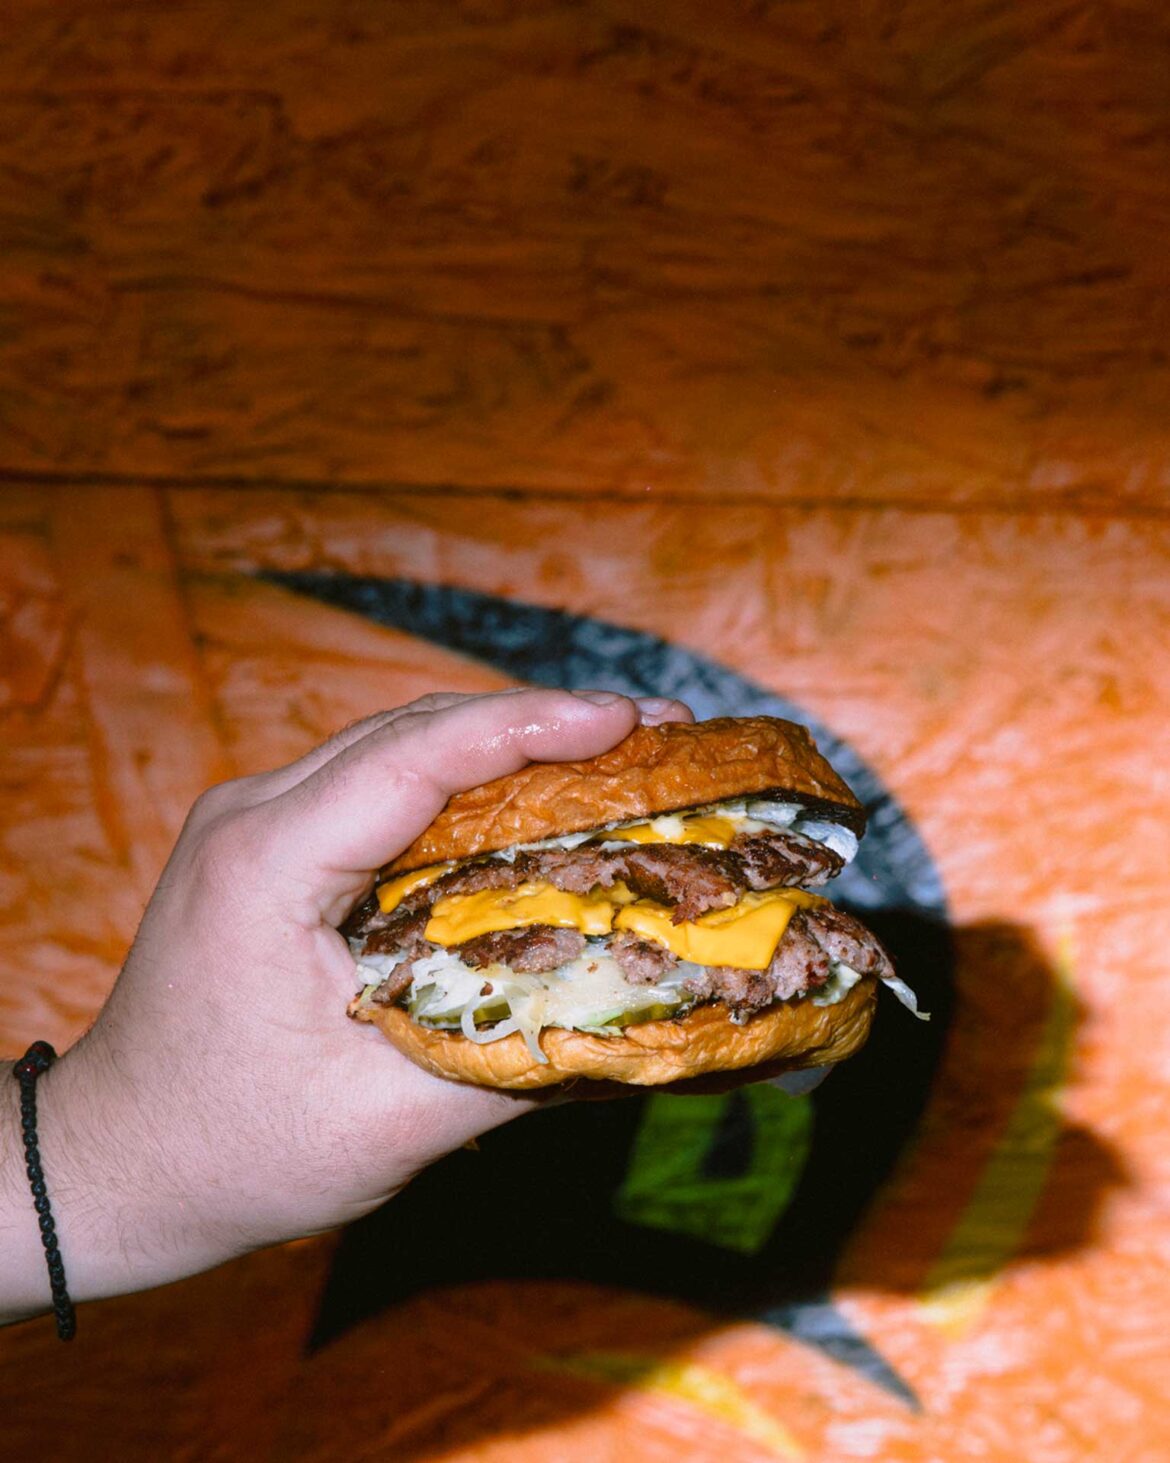 Τα burger των σεφ: 5 εκδοχές του αγαπημένου street food που αλλάζουν τα δεδομένα